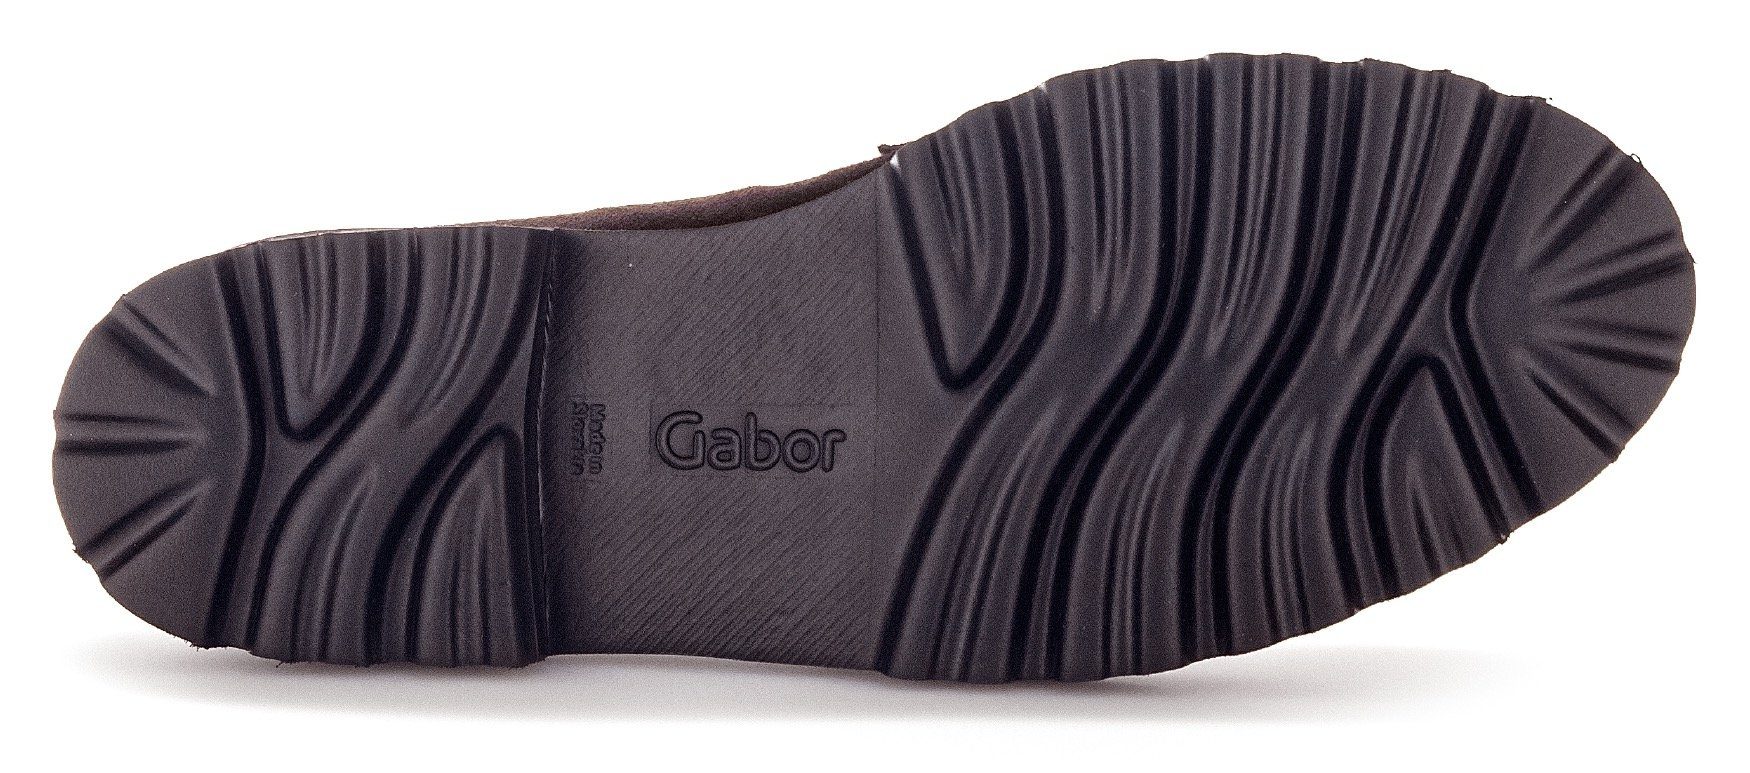 Fitting-Ausstattung Slipper Gabor mit dunkelbraun-schwarz Best